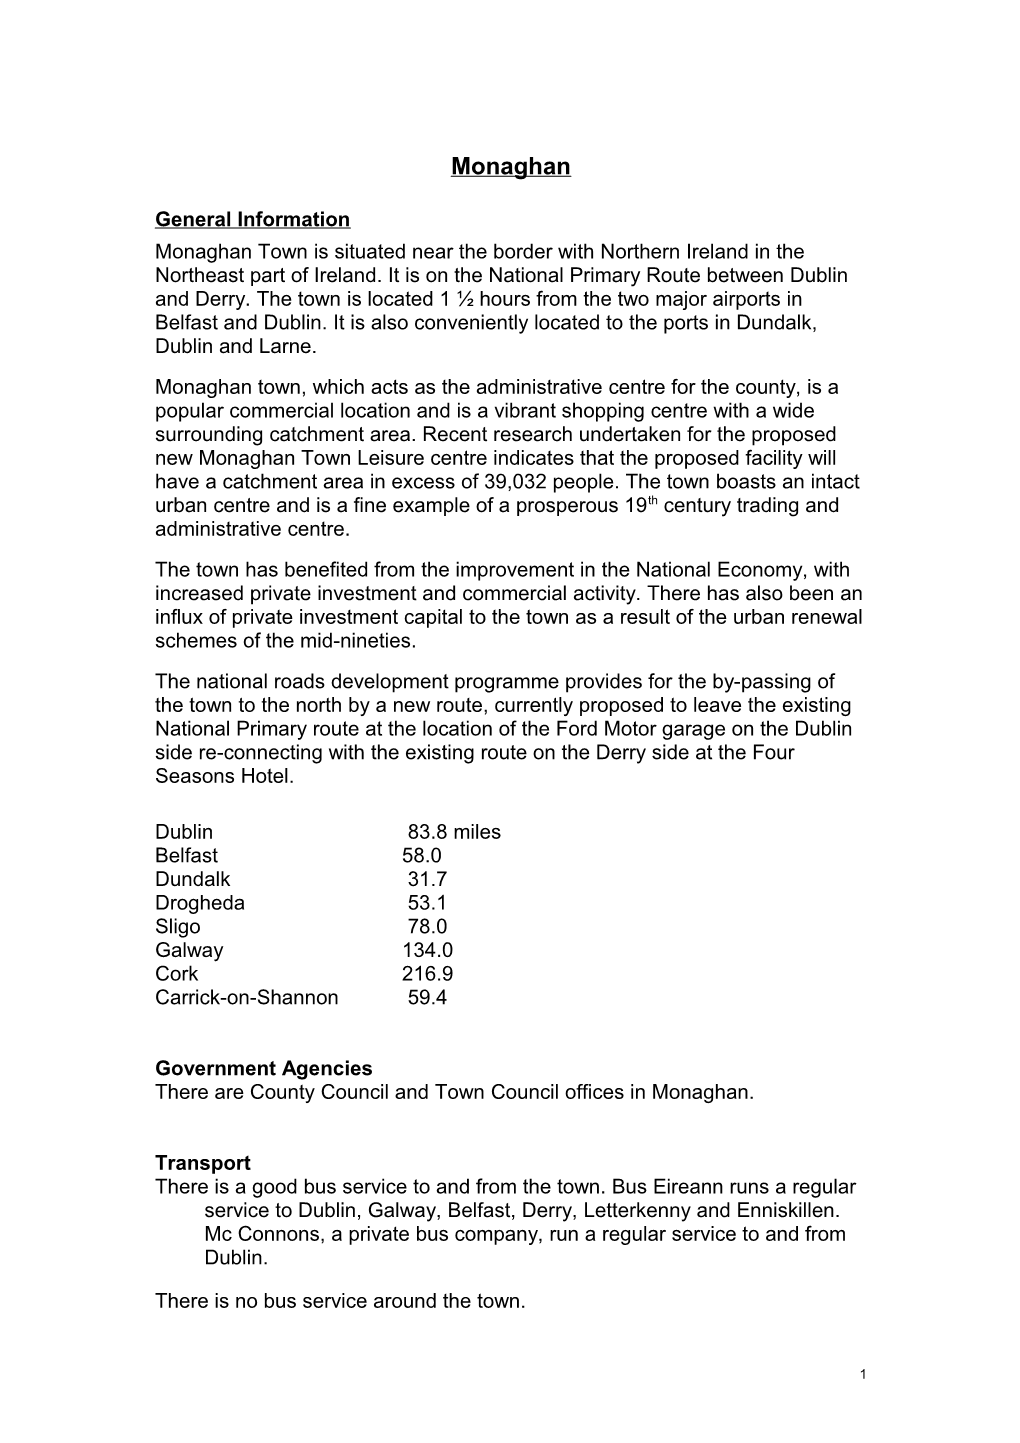 Monaghan Town: Decentralisation Information for Civil & Public Servants